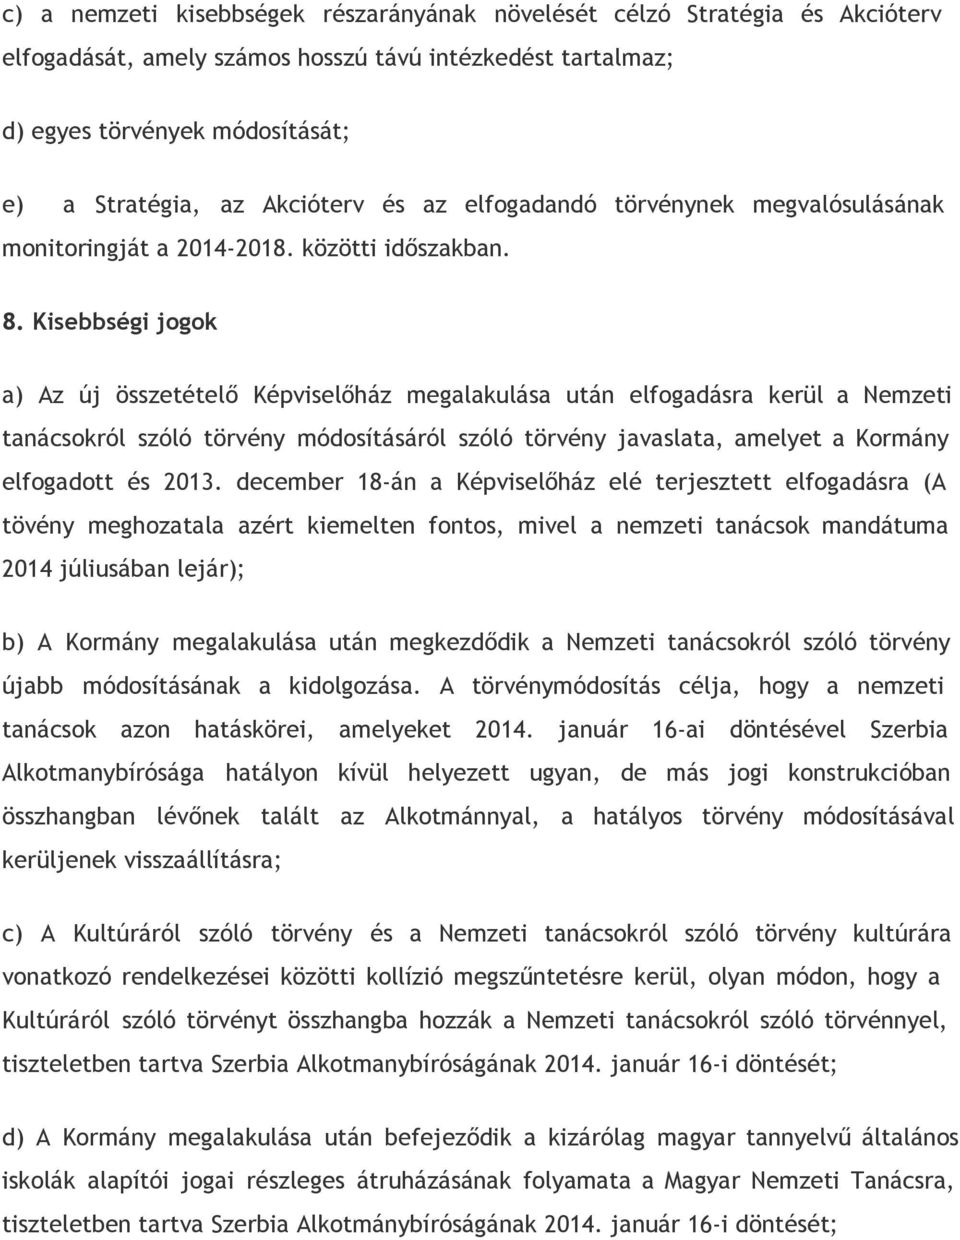 Kisebbségi jogok a) Az új összetételő Képviselőház megalakulása után elfogadásra kerül a Nemzeti tanácsokról szóló törvény módosításáról szóló törvény javaslata, amelyet a Kormány elfogadott és 2013.